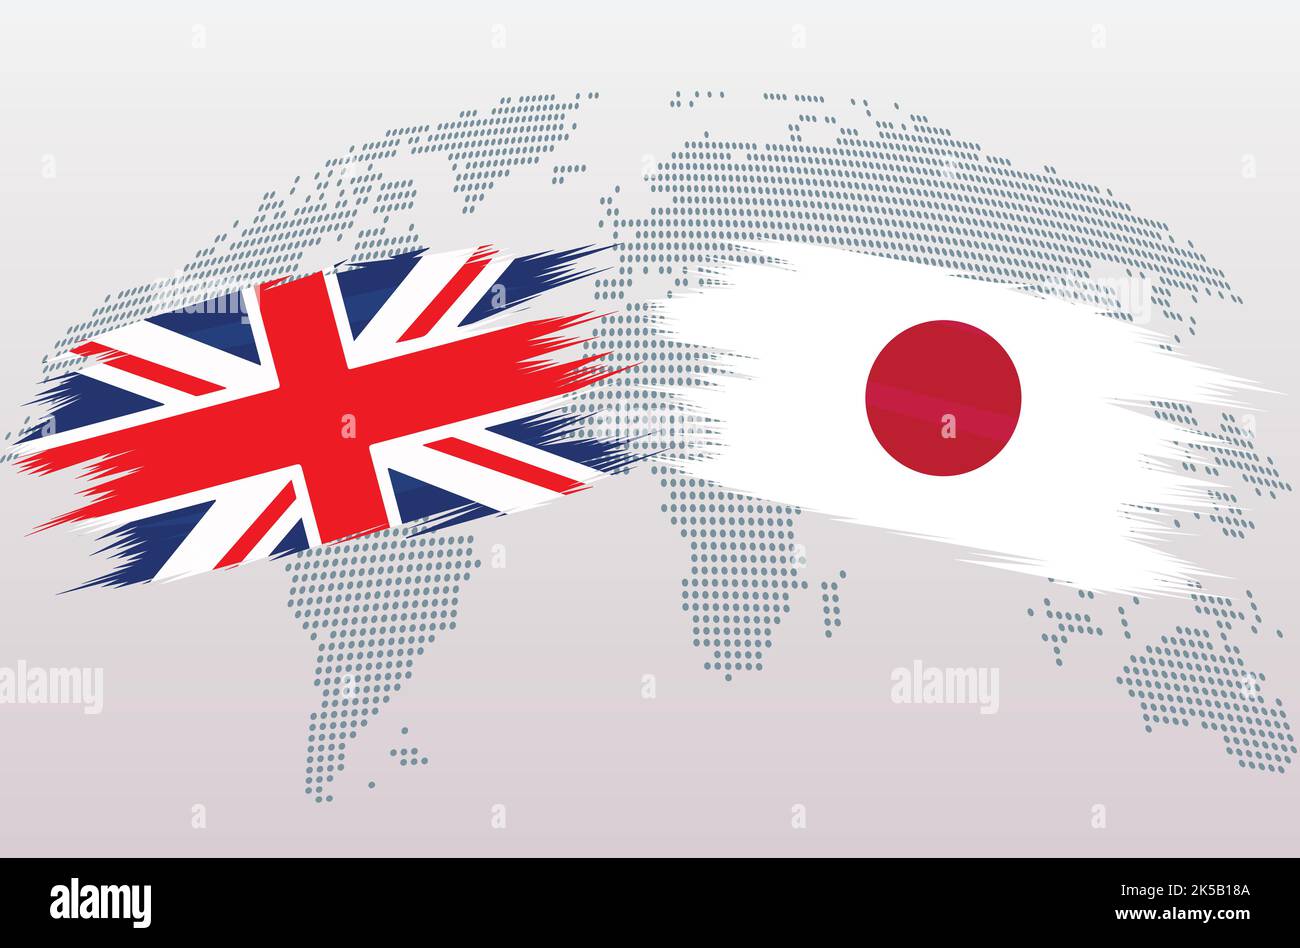 Britische Flaggen Großbritannien und Japan. Die Flagge des Vereinigten Königreichs gegen Japan, isoliert auf grauem Hintergrund der Weltkarte. Vektorgrafik. Stock Vektor